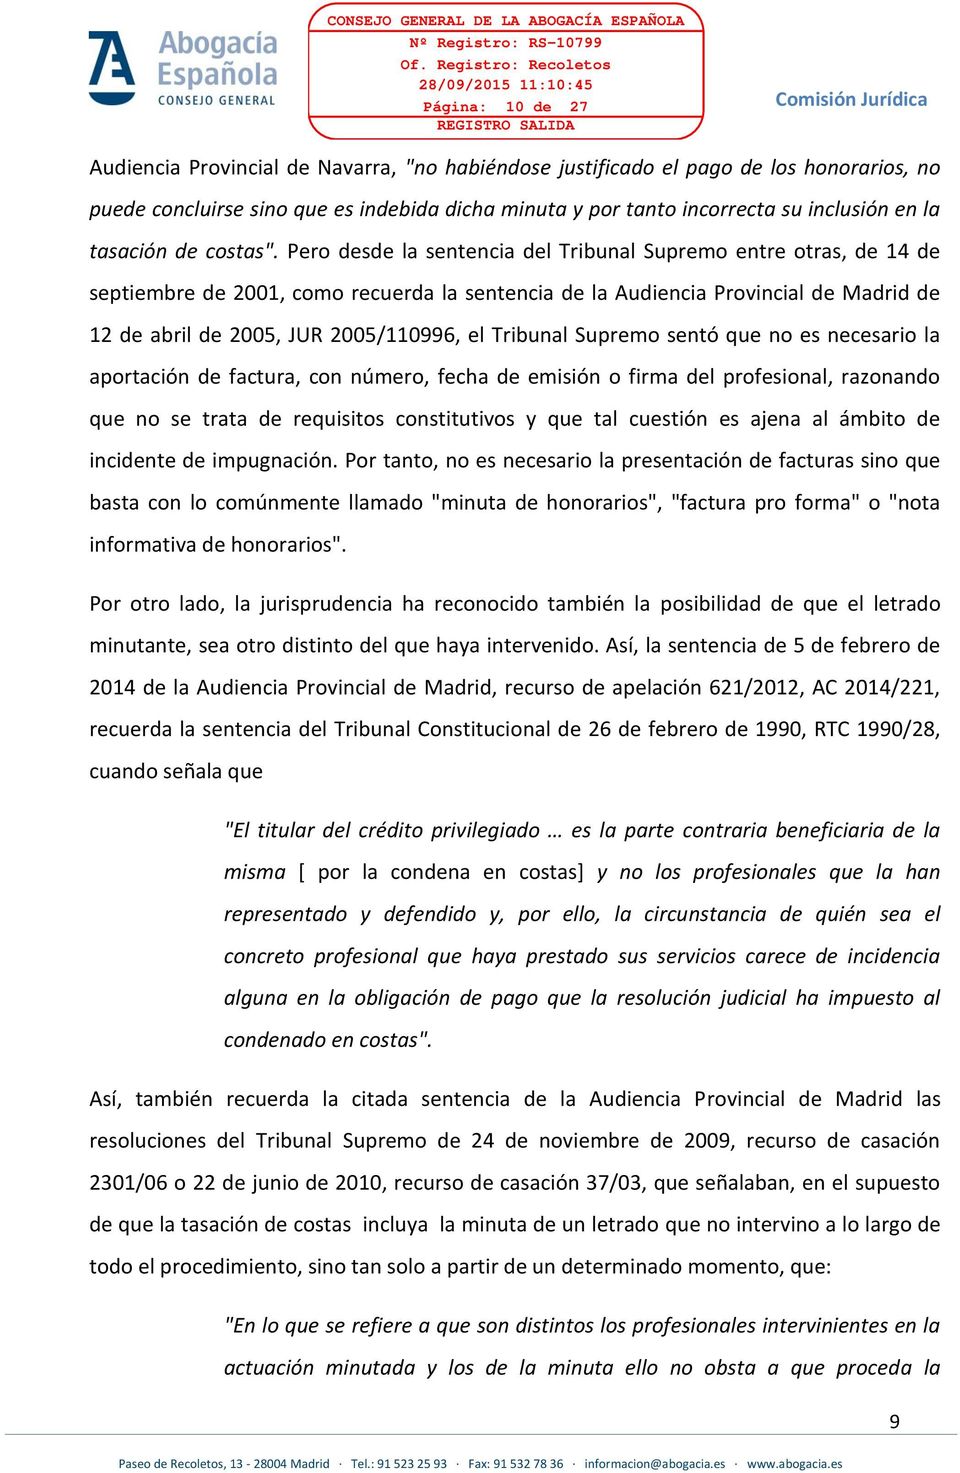 Pero desde la sentencia del Tribunal Supremo entre otras, de 14 de septiembre de 2001, como recuerda la sentencia de la Audiencia Provincial de Madrid de 12 de abril de 2005, JUR 2005/110996, el